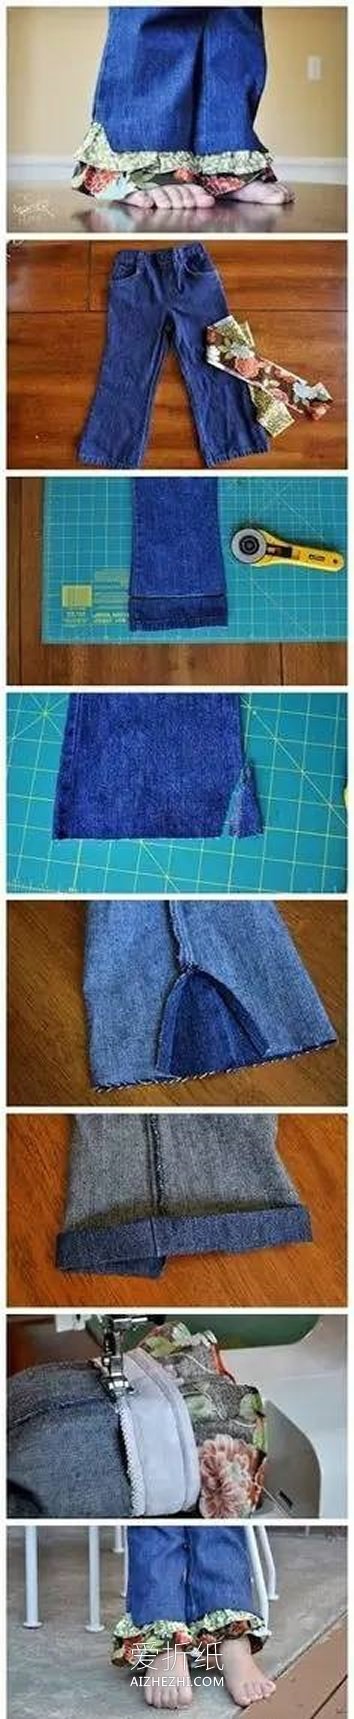 怎么改造加长儿童裤子的方法图片- www.aizhezhi.com